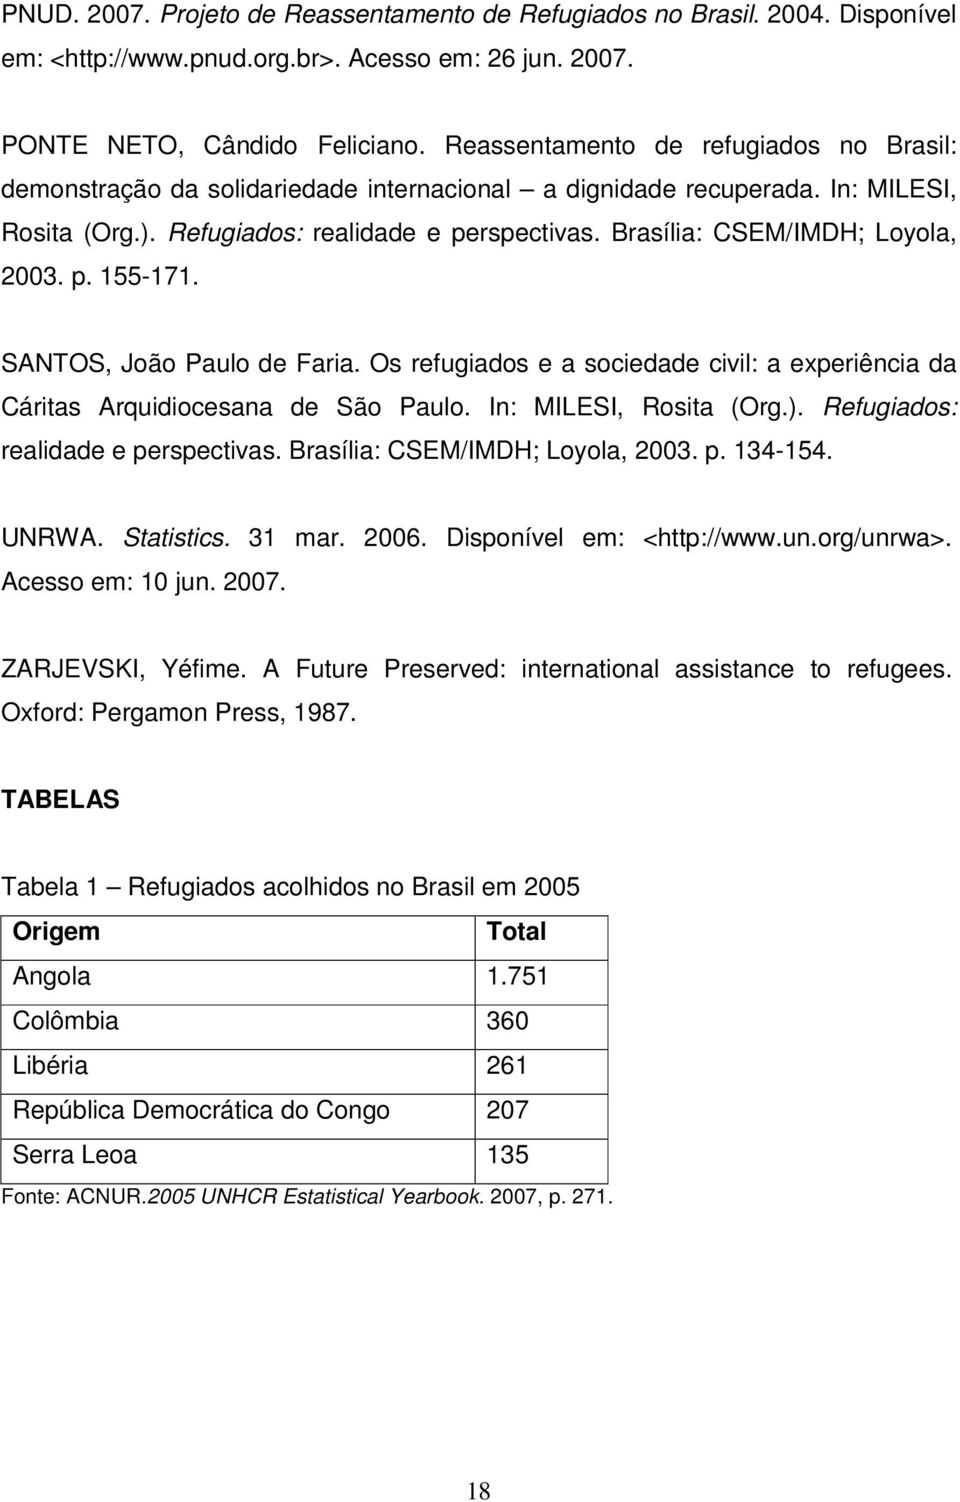 Brasília: CSEM/IMDH; Loyola, 2003. p. 155-171. SANTOS, João Paulo de Faria. Os refugiados e a sociedade civil: a experiência da Cáritas Arquidiocesana de São Paulo. In: MILESI, Rosita (Org.).